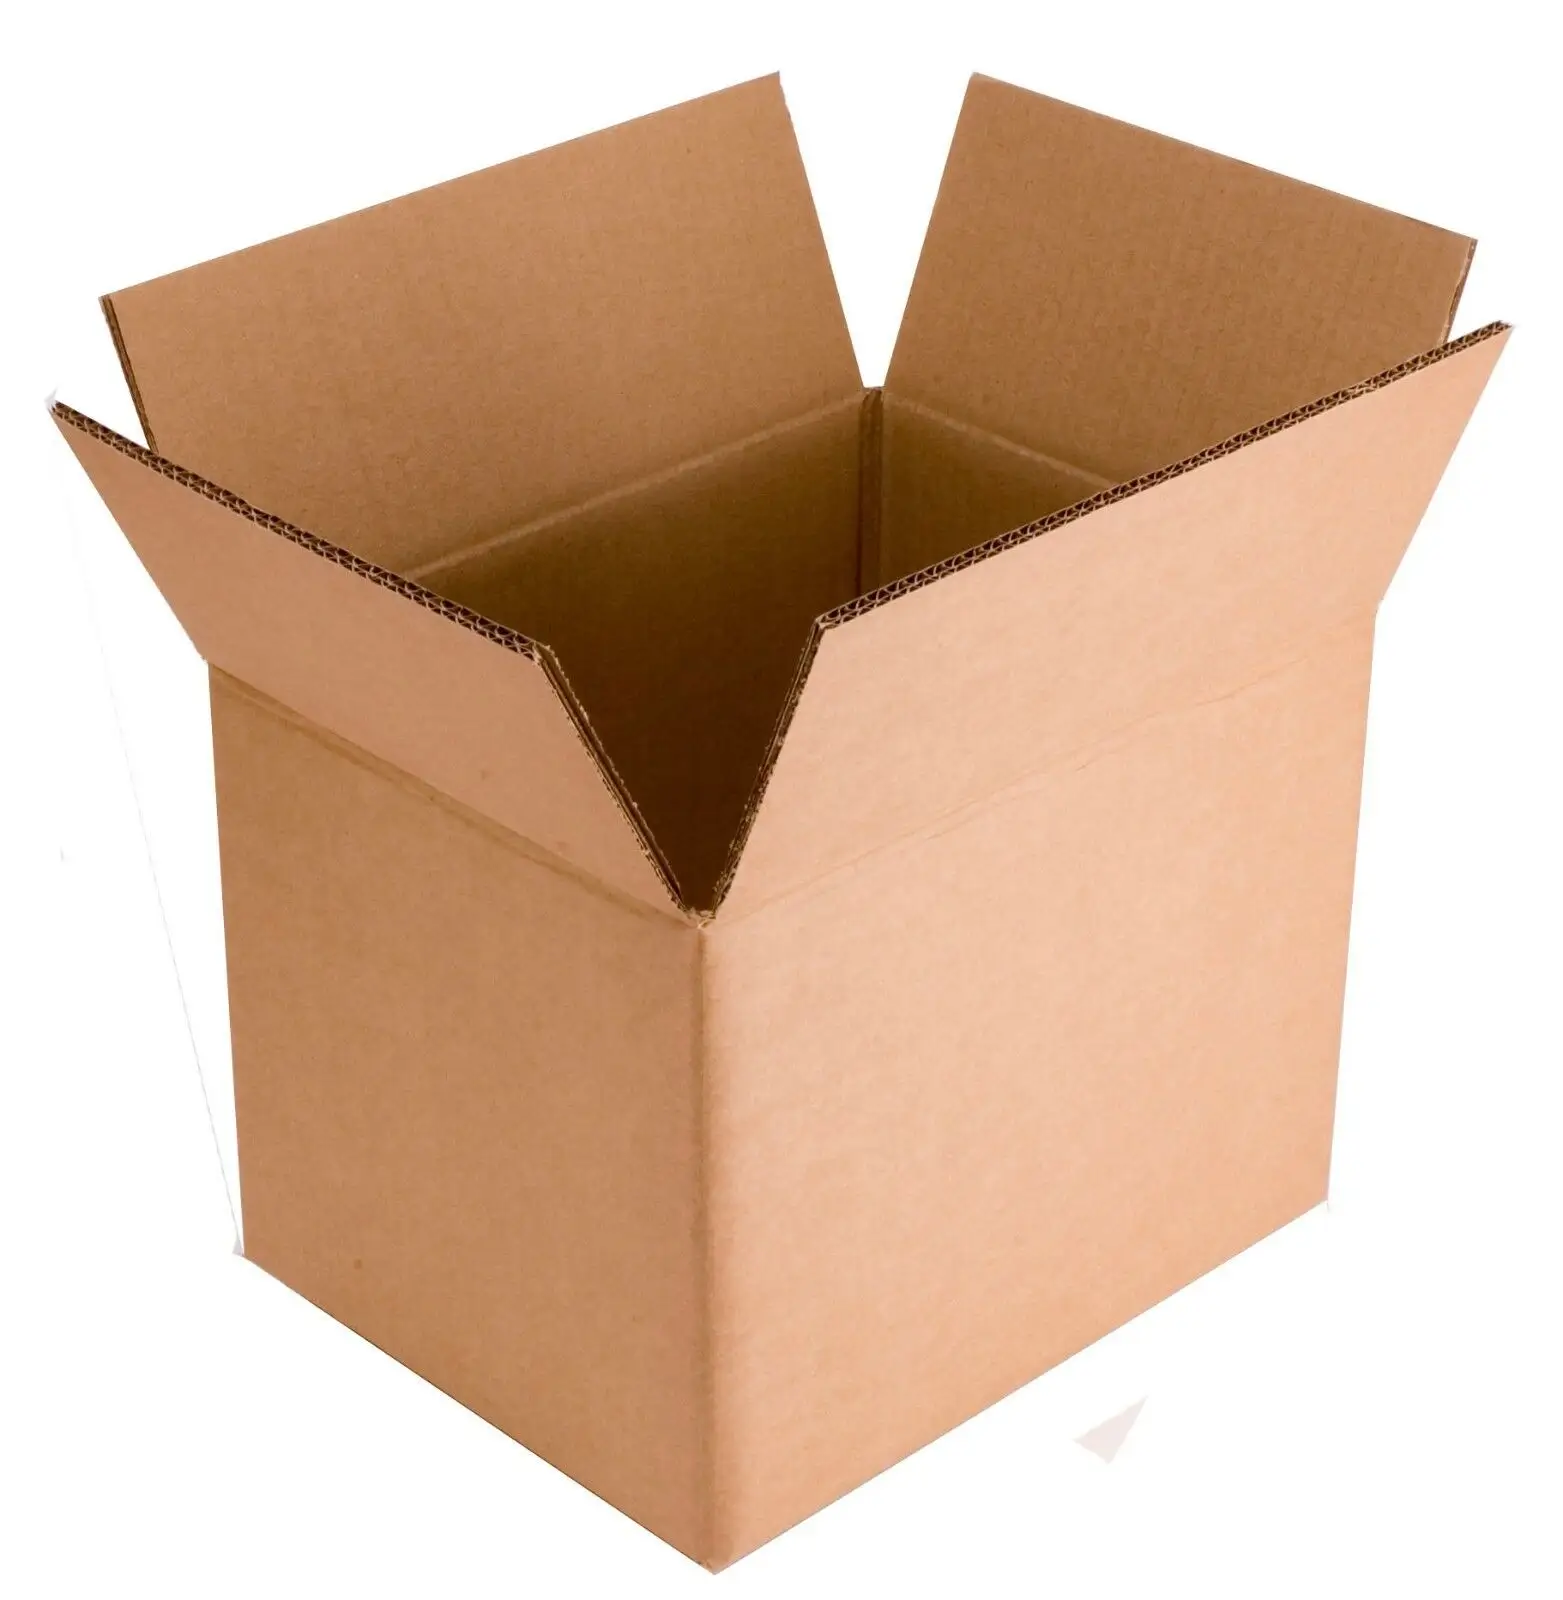 HENGXING-cajas de cartón fuertes, embalaje de varios tamaños, eliminación de hogar, cajas de almacenamiento